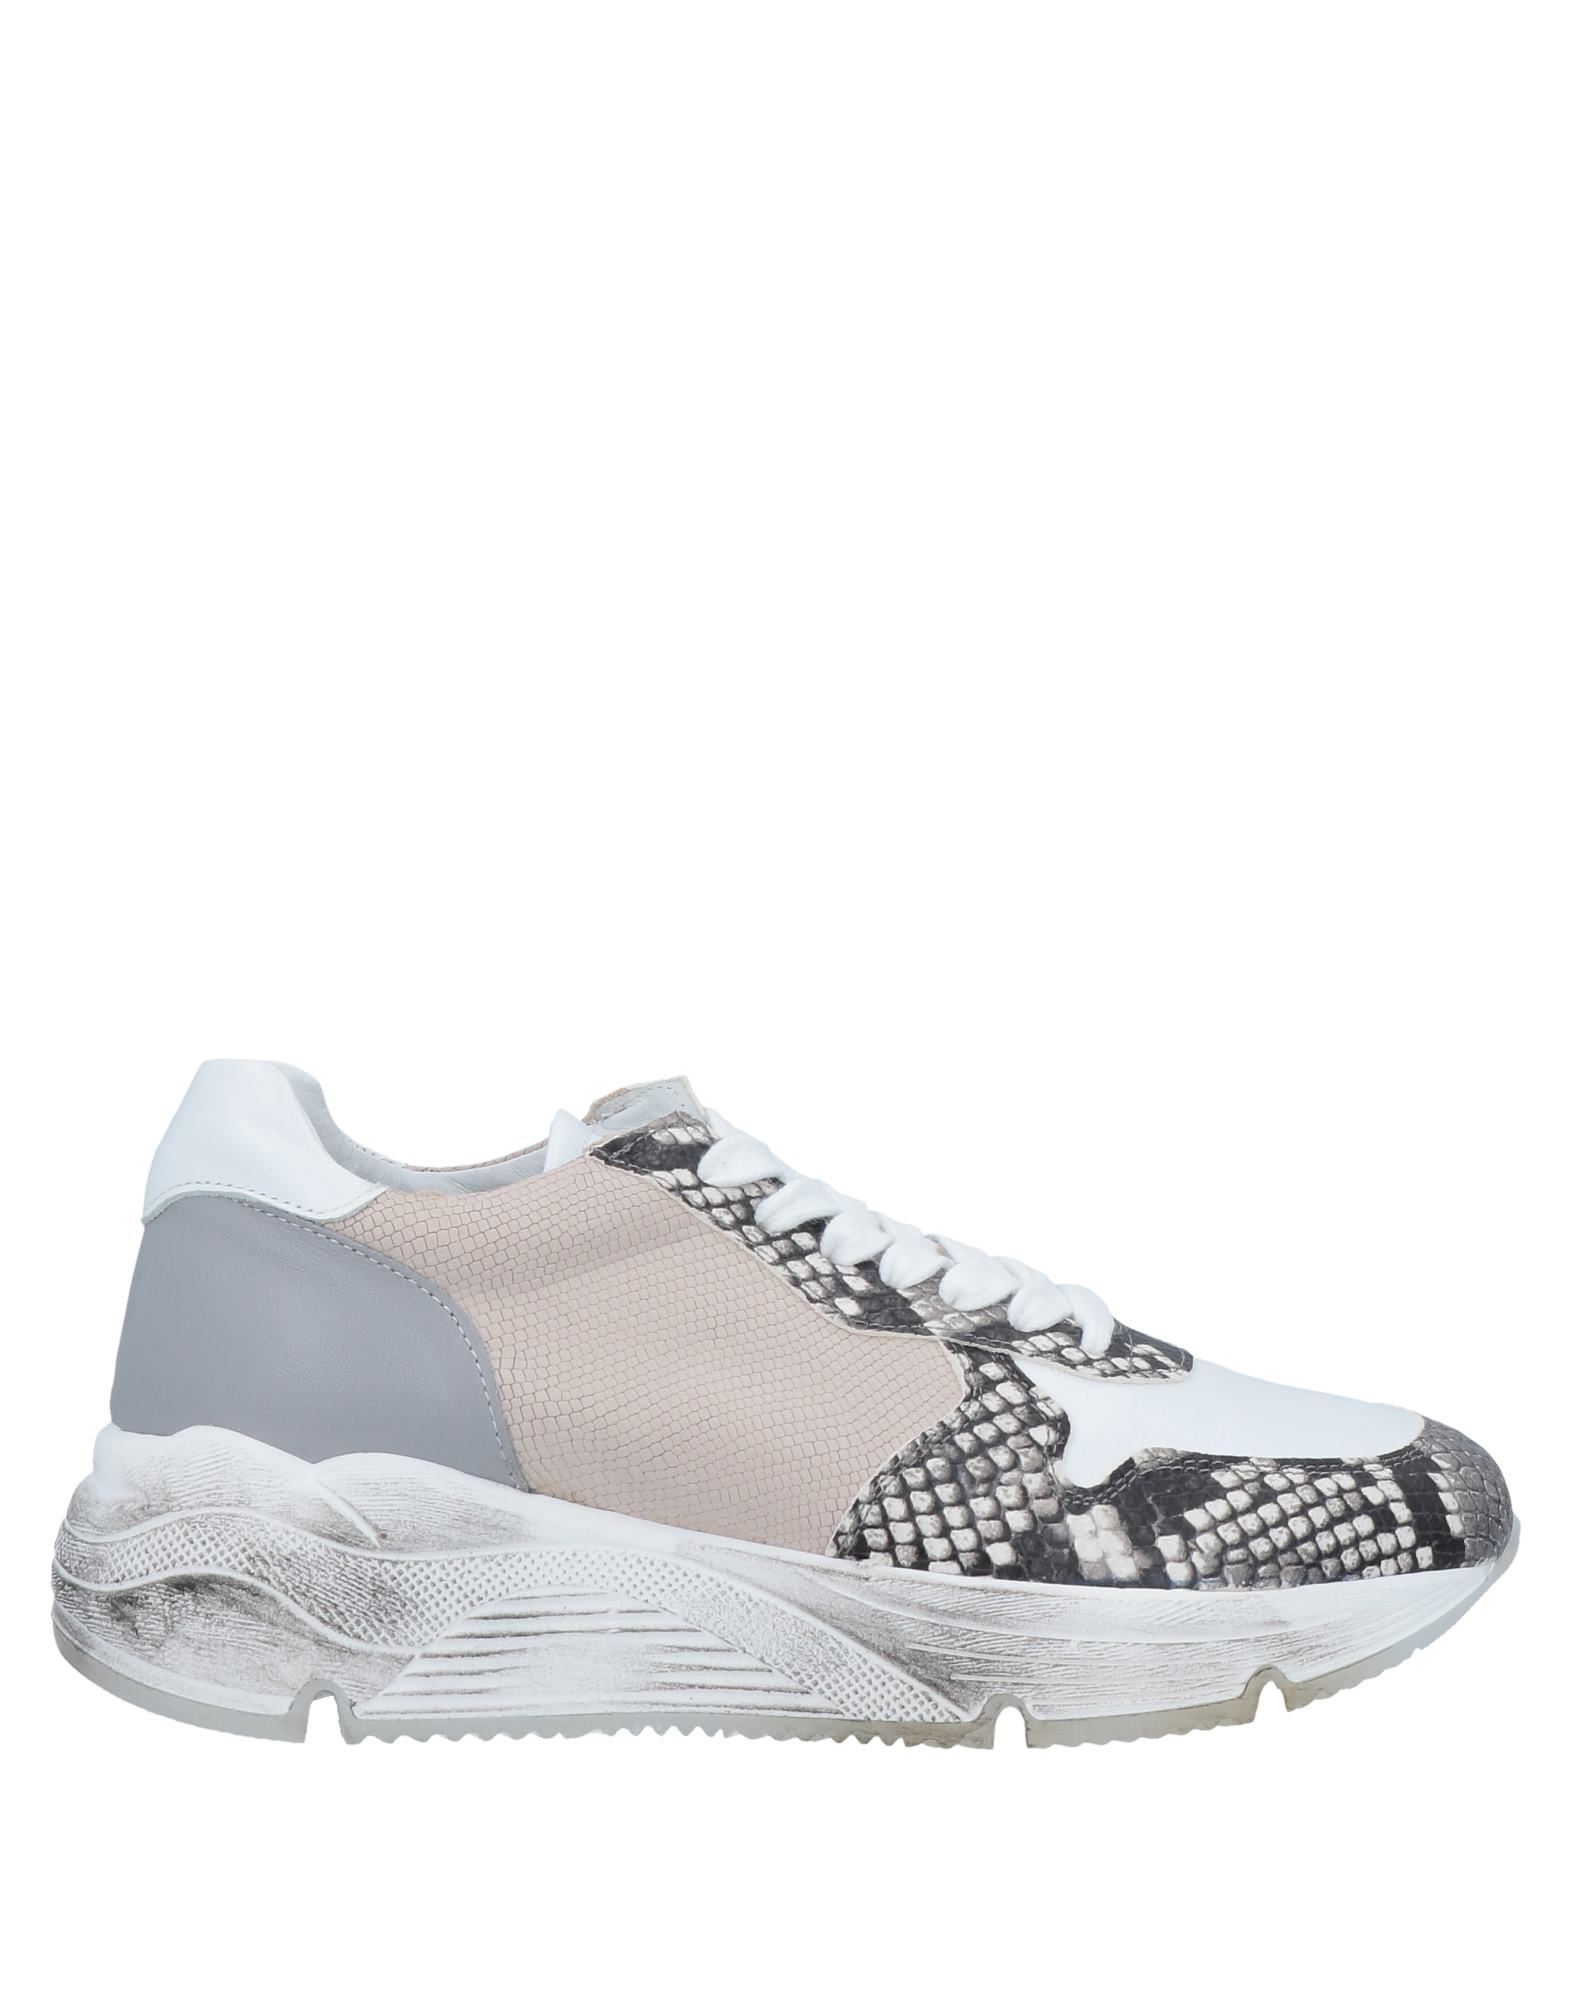 Tsd12 Sneakers In White | ModeSens